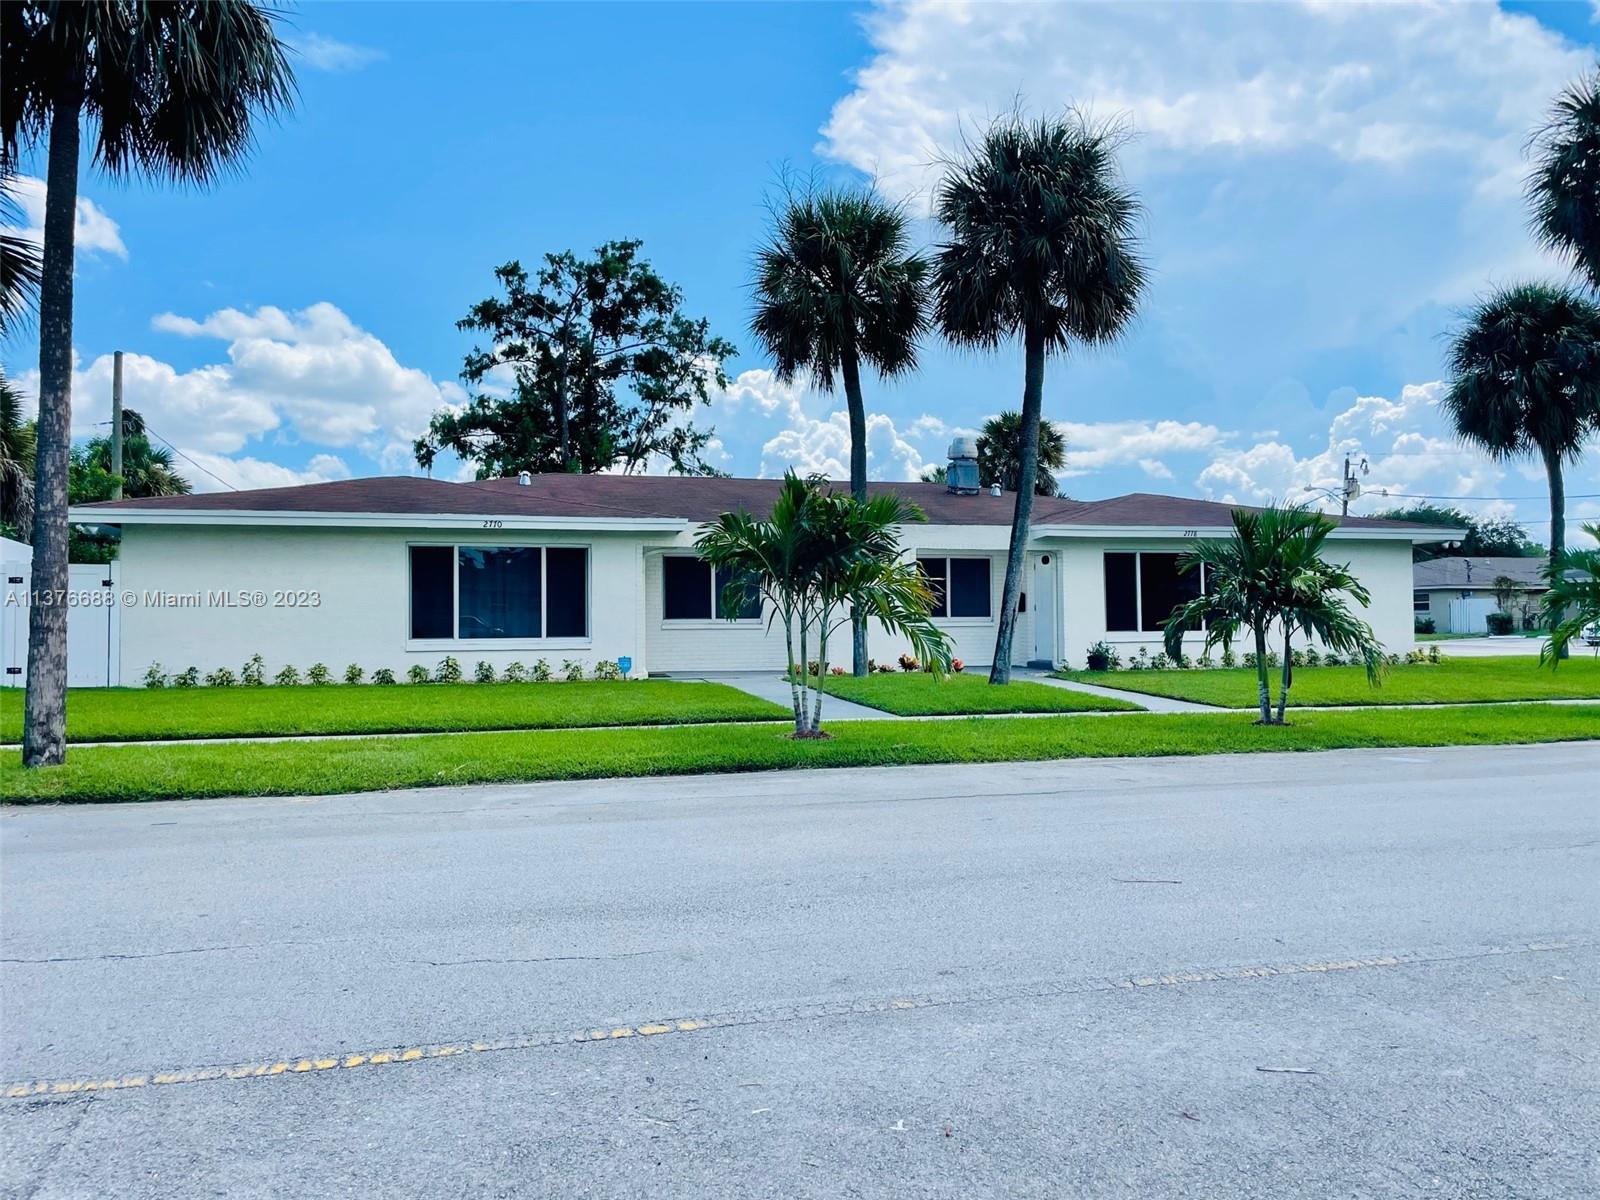 Rental Property at 2770 Nw 58th Ter, Lauderhill, Miami-Dade County, Florida -  - $1,026,000 MO.